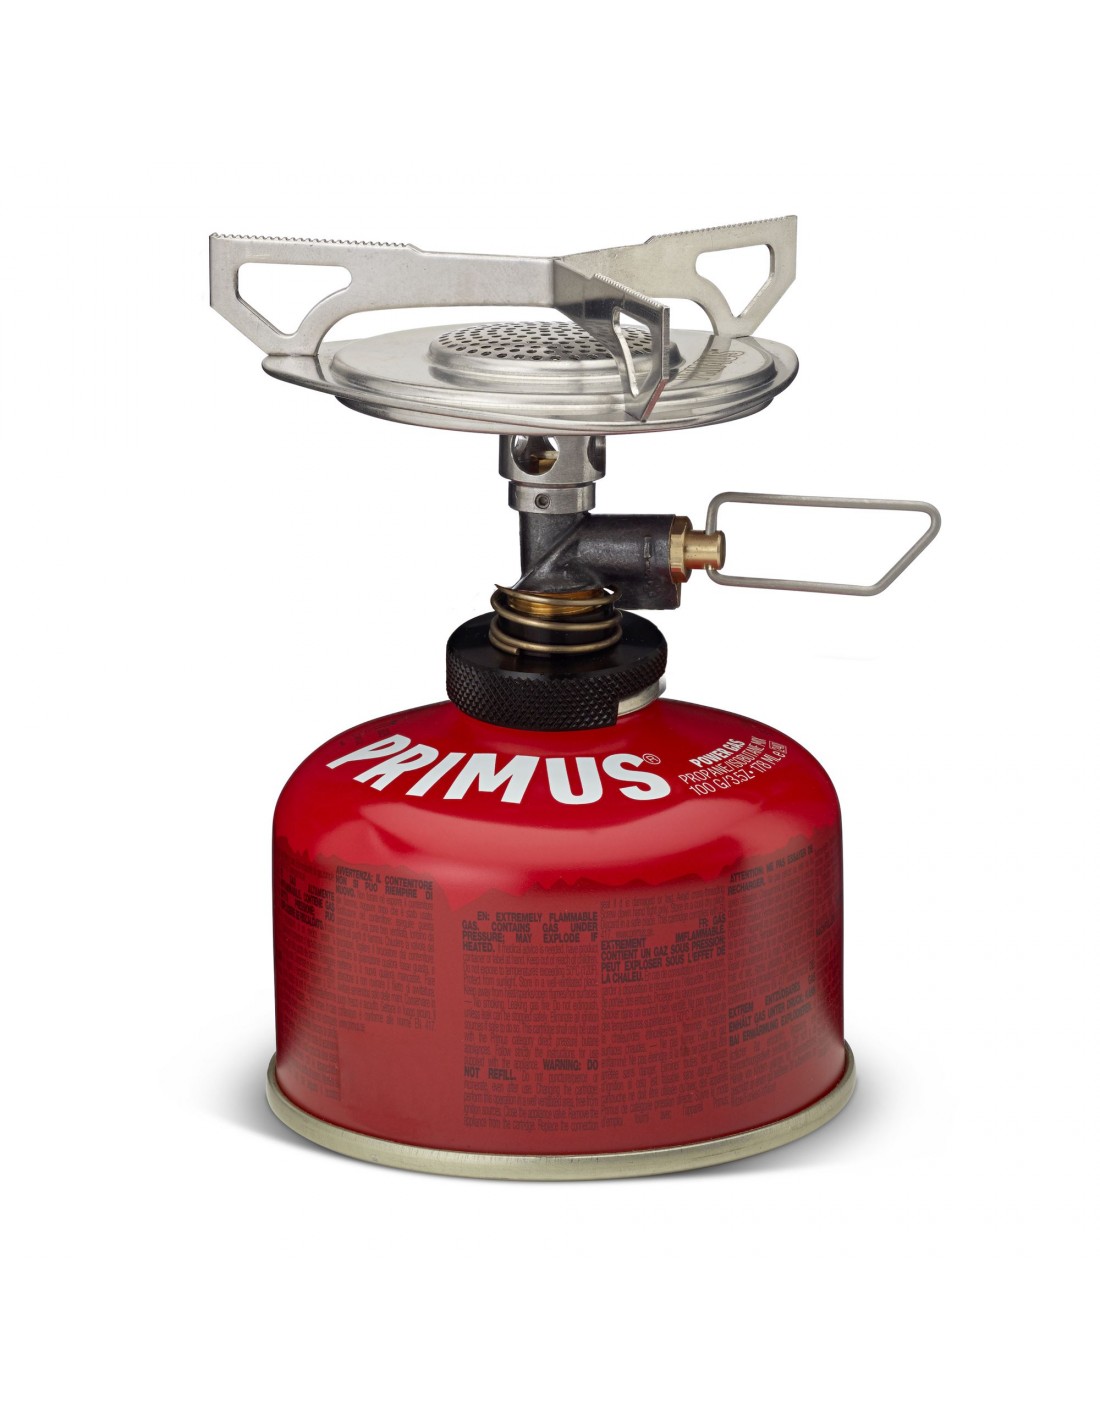 Primus Essential Trail Stove Duo Kocher Konstruktion - Kartusche darunter, Kocher Brennstoff - Butan / Propan, Kocher Variante - Einflammenkocher, von Primus